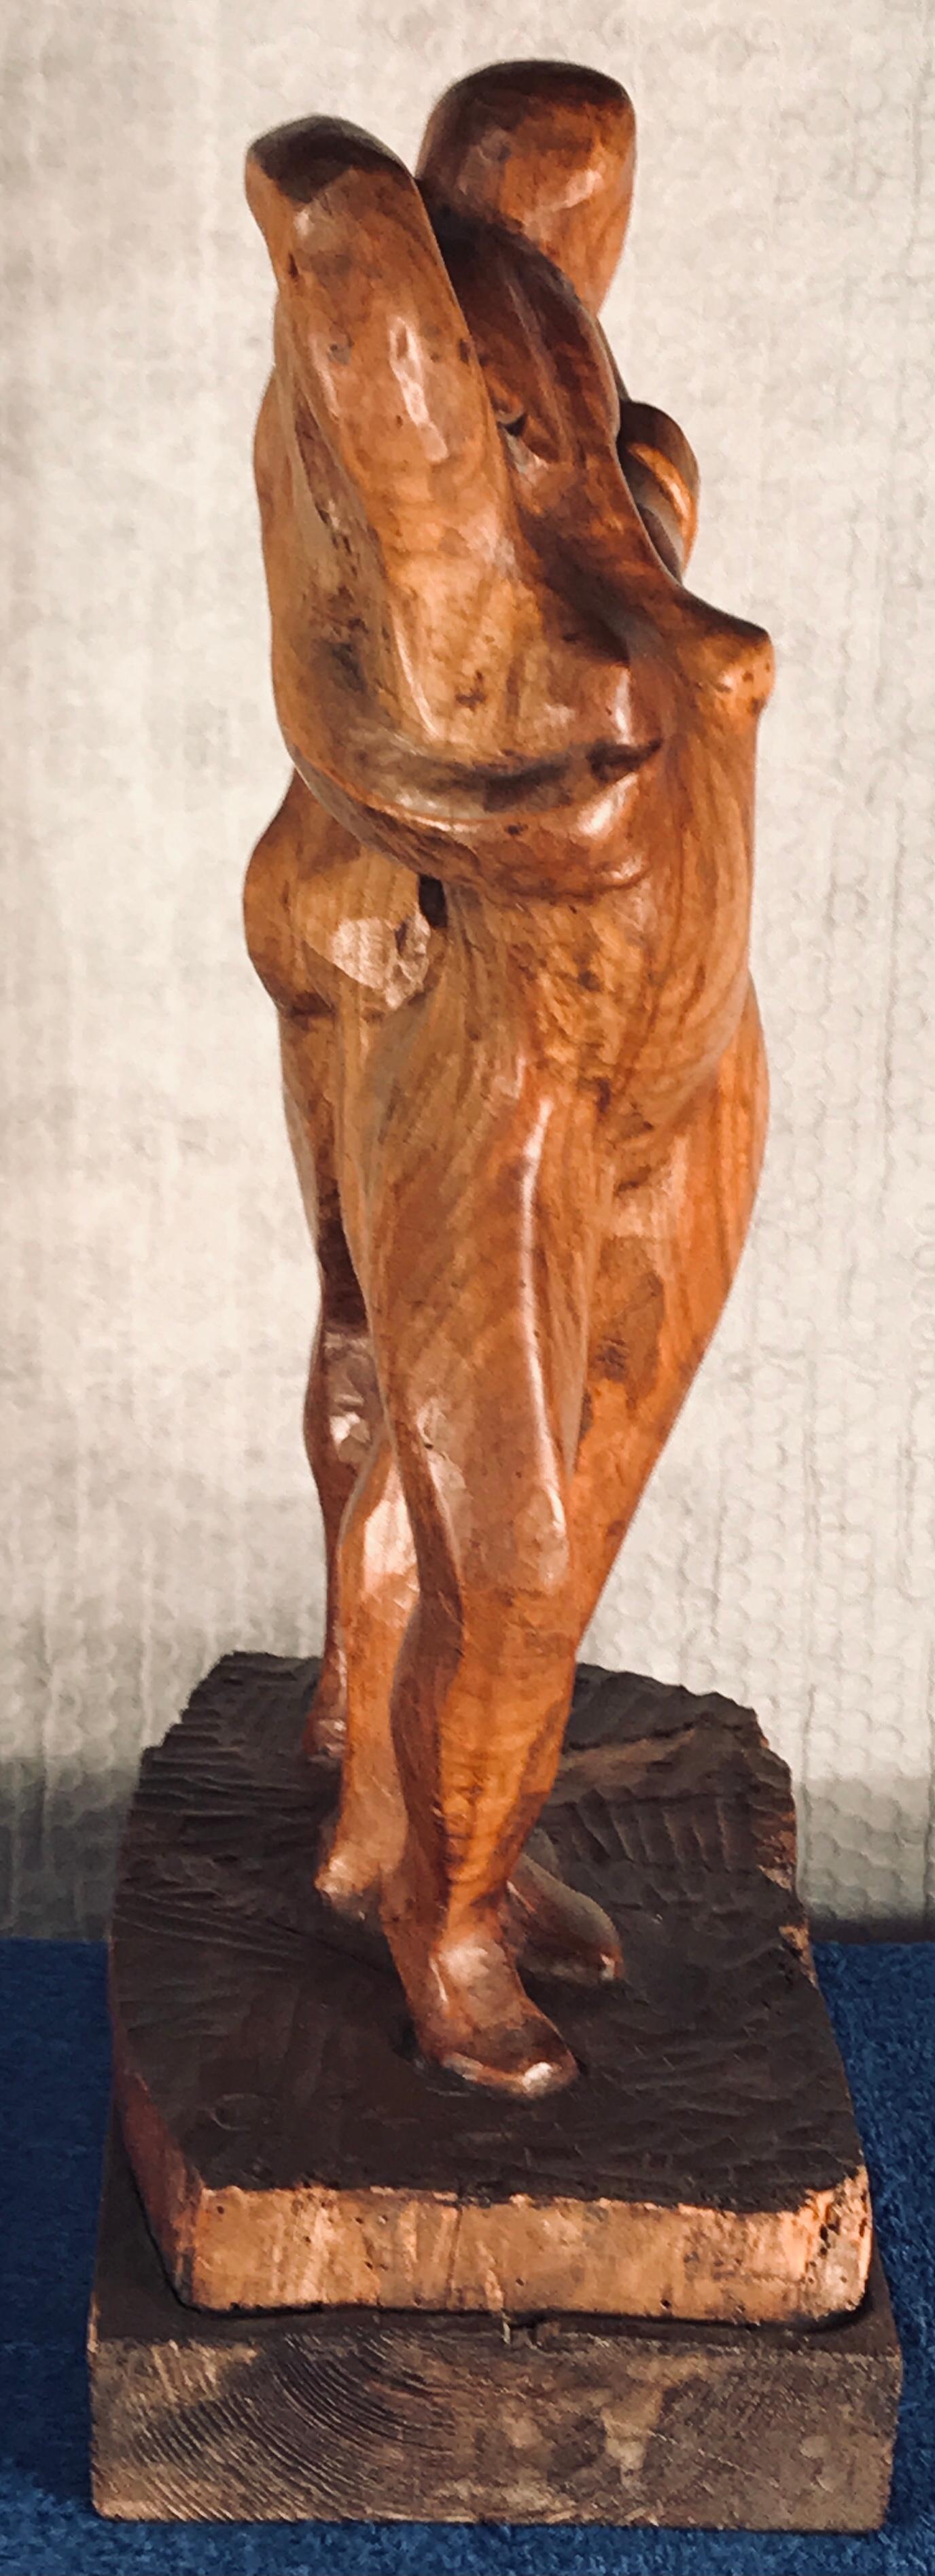 Henri Collomb, französischer Künstler (1905-?), “Couple Dansant“ (Tanzendes Paar), Nussbaum handgeschnitzt. 
Die Skulptur trägt ein Monogramm und ist datiert auf 192...
Es wird von Deutschland aus versandt. 

Henri Collomb wurde 1905 geboren und